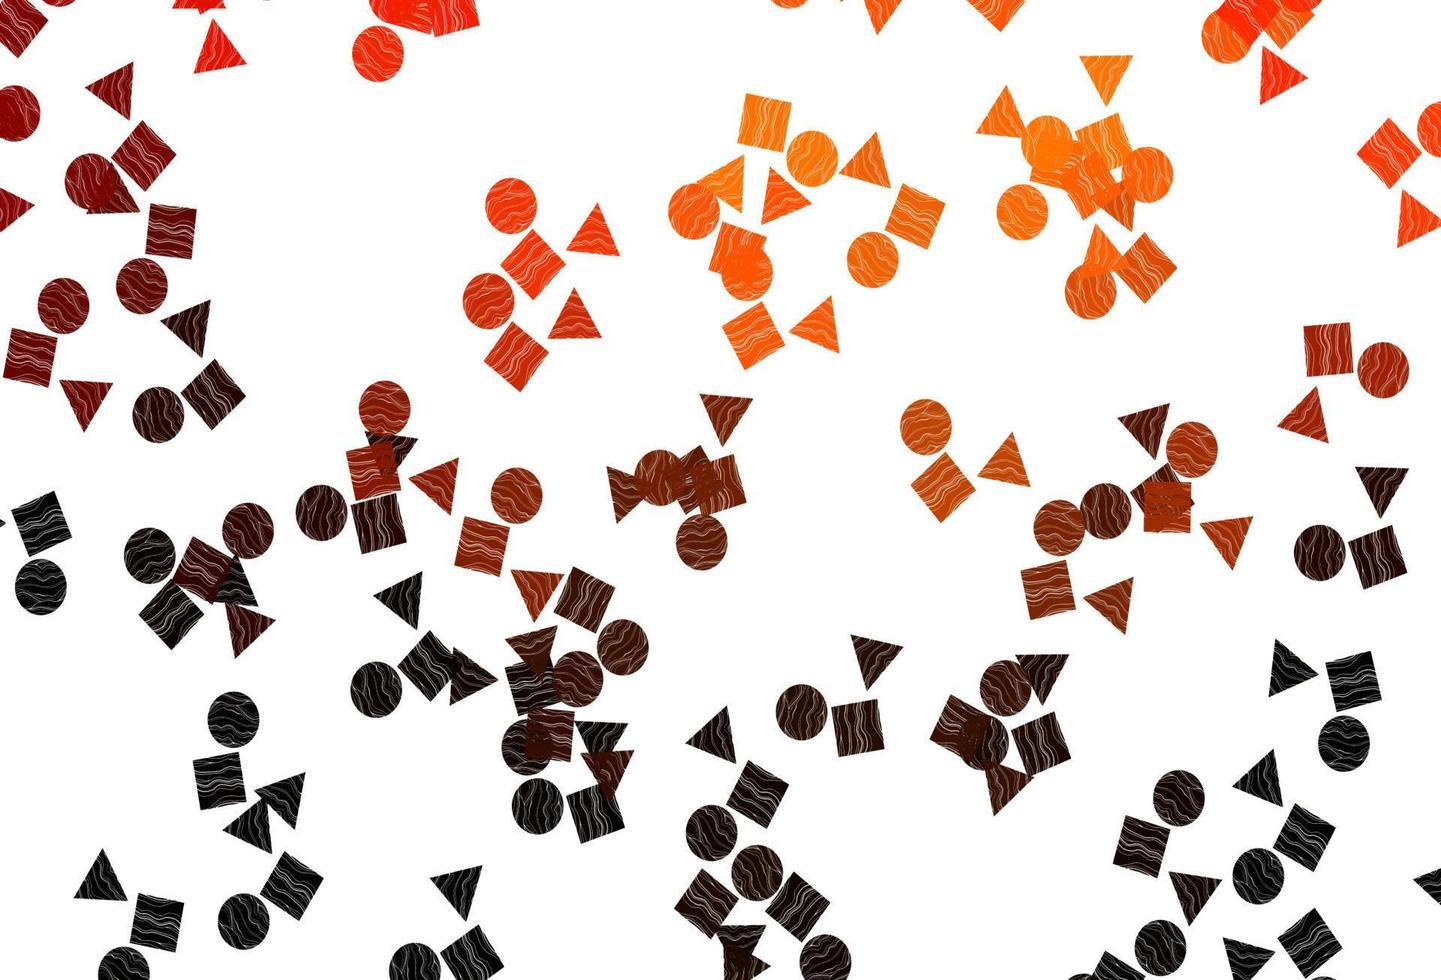 padrão de vetor laranja claro em estilo poligonal com círculos.